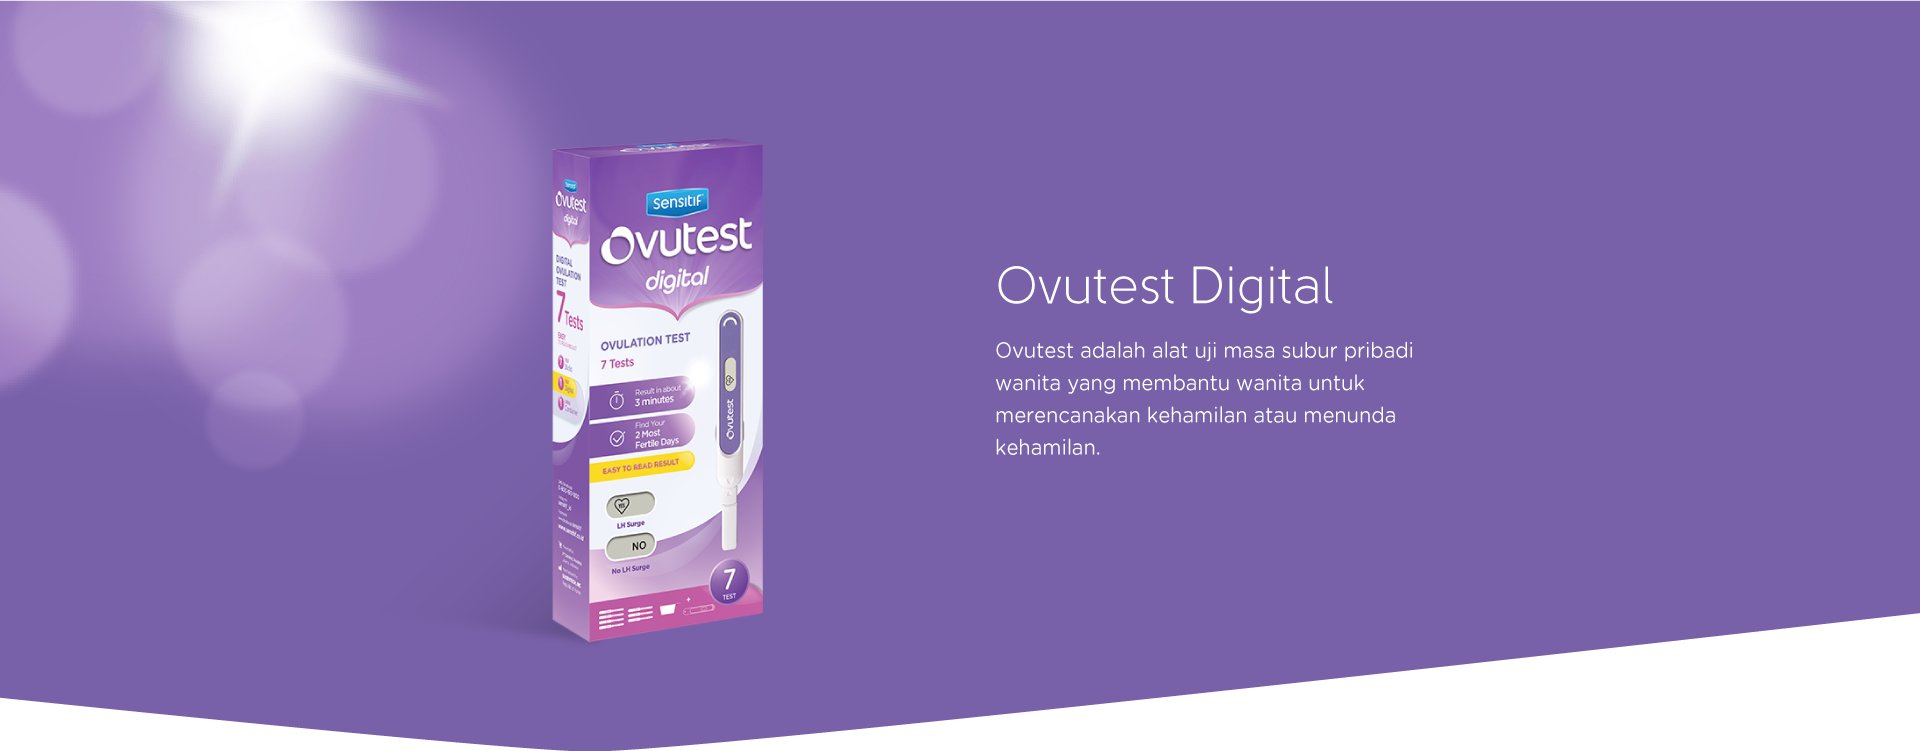 Image result for ovutest digital